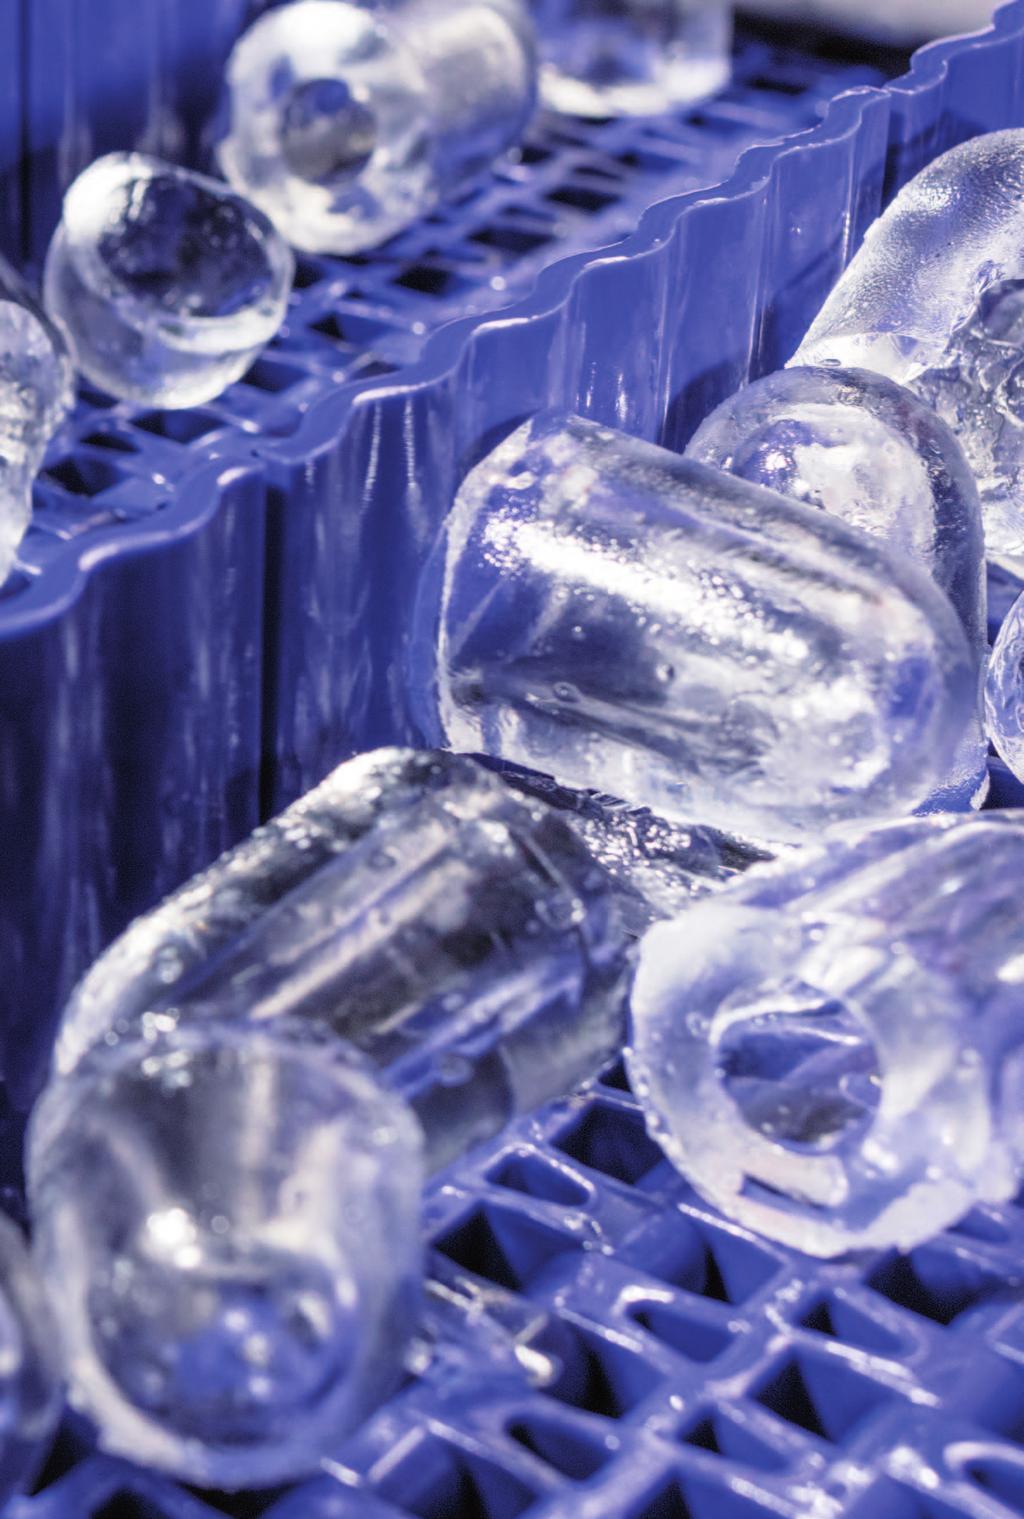 Produktion Eiskalte Qualität made in Germany Seit 2002 produzieren wir unter der Marke ICE FACTORY Eis nach höchsten Qualitäts- und Hygienestandards (IFS Higher Level).